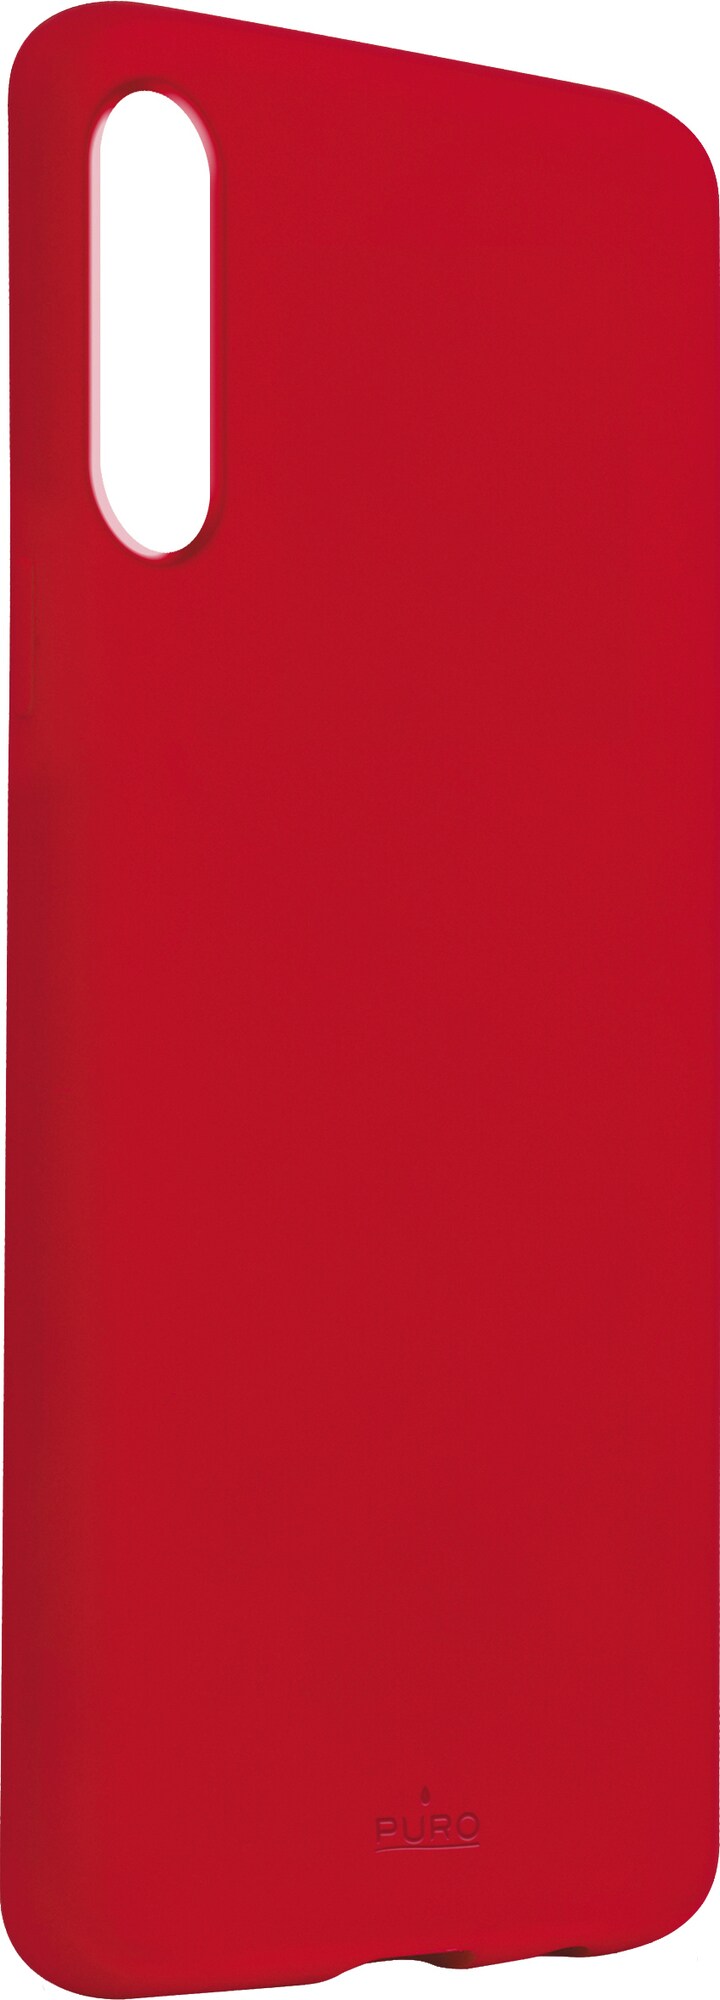 Puro Icon Samsung Galaxy A50 deksel (rød) - Deksler og etui til  mobiltelefon - Elkjøp